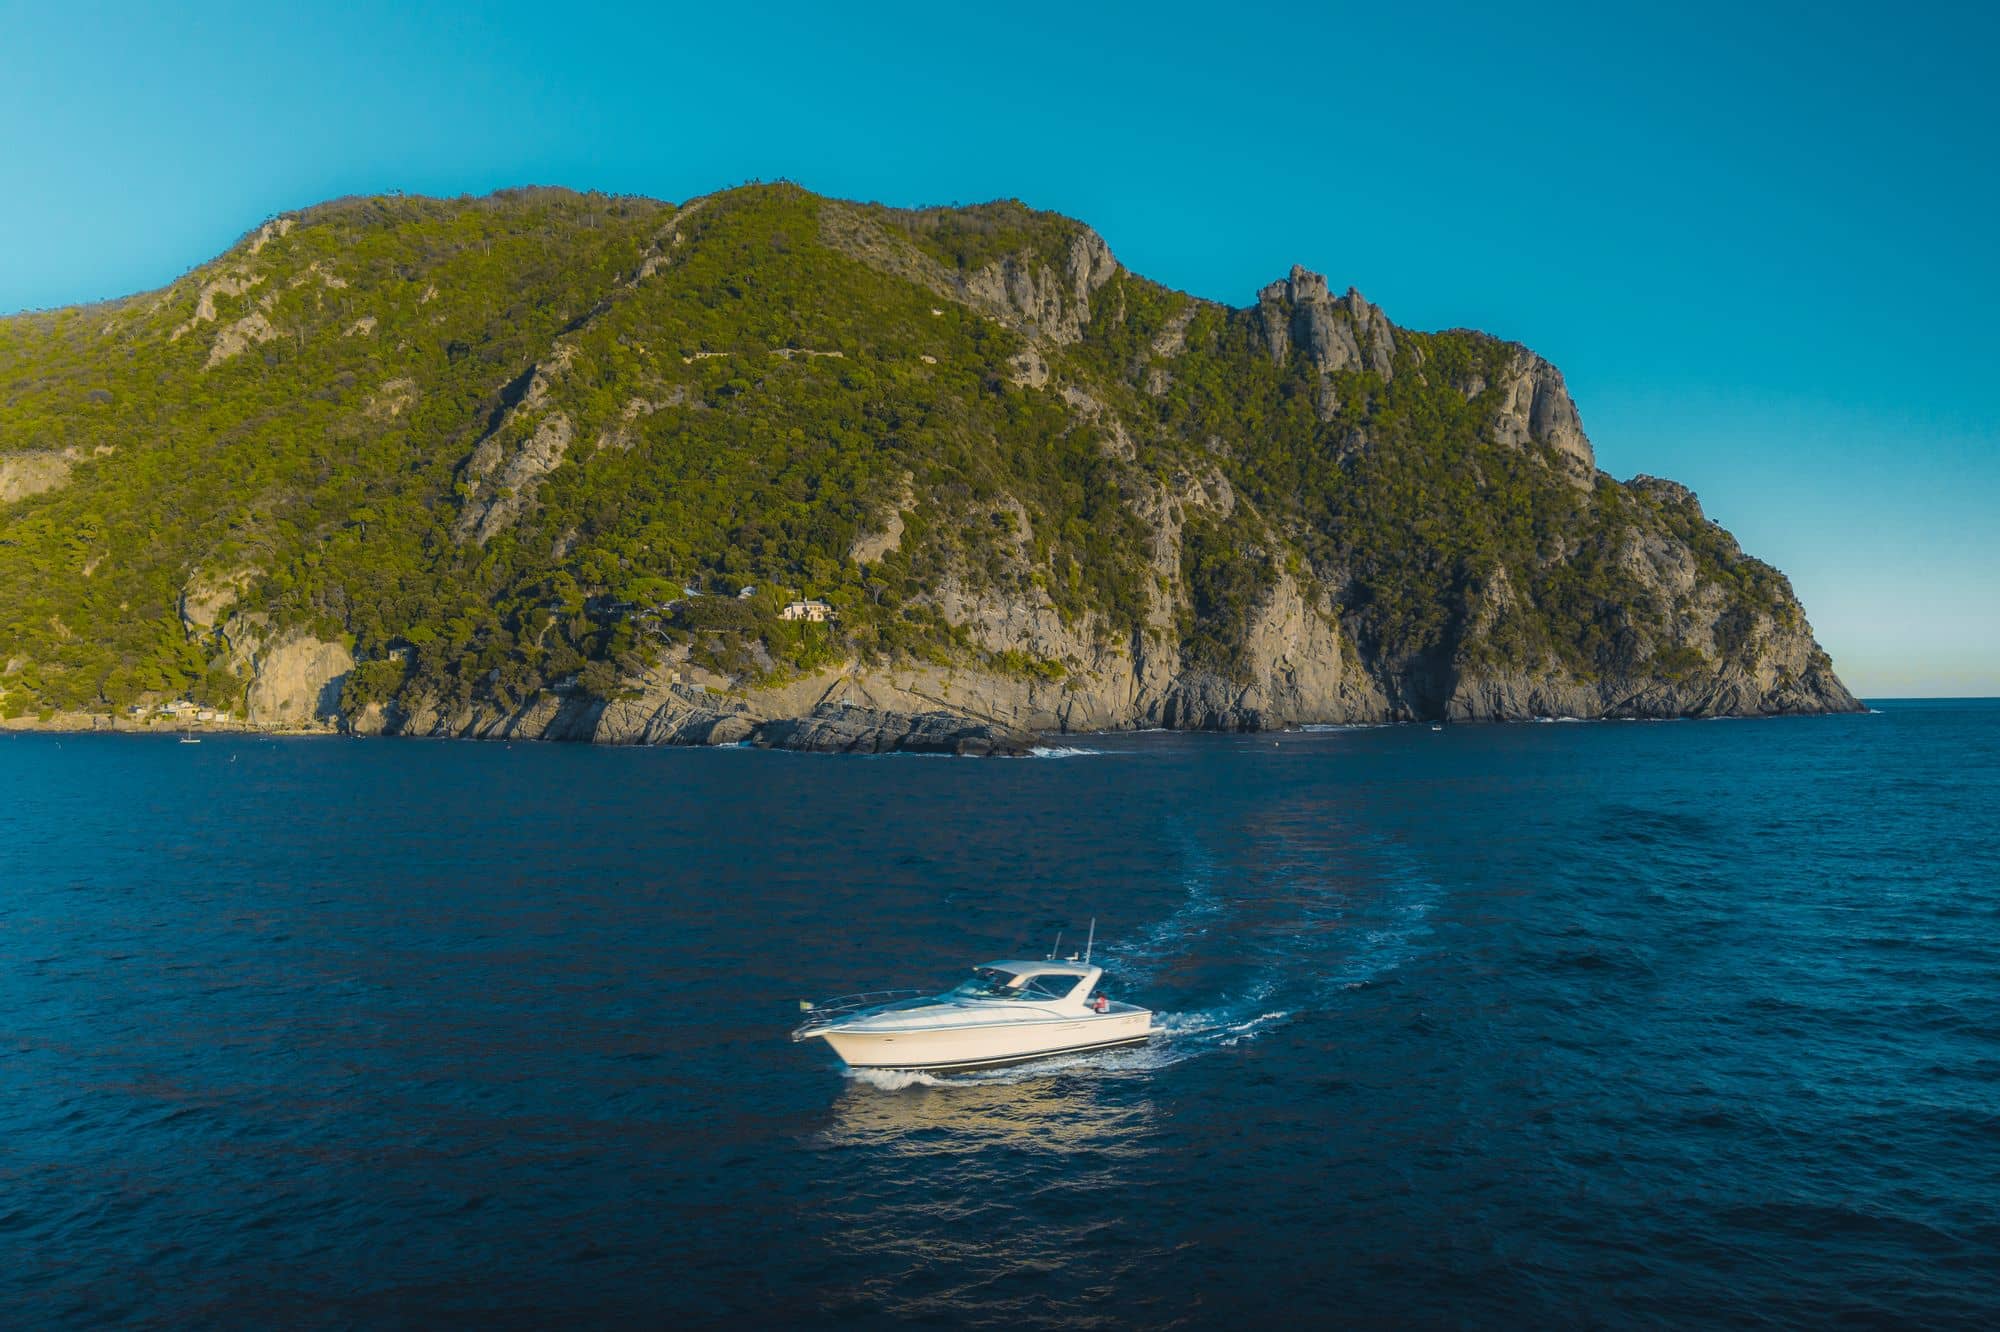 Cesare Charter Portofino - Servizi tour, transfer e charter marittimi